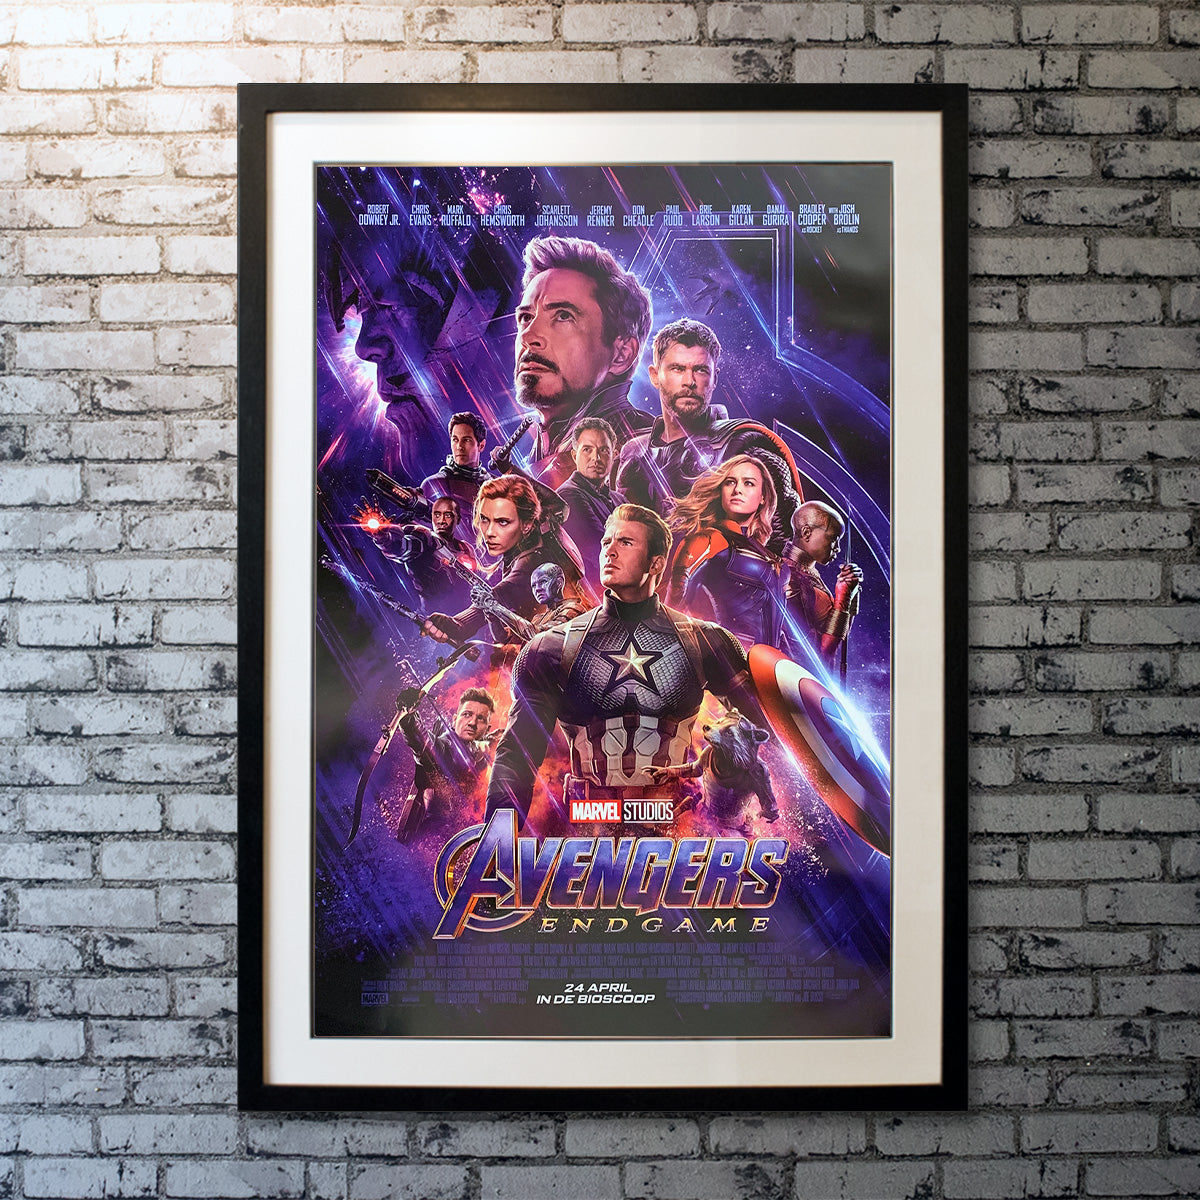 Original Movie Poster of Avengers: Endgame (2019)